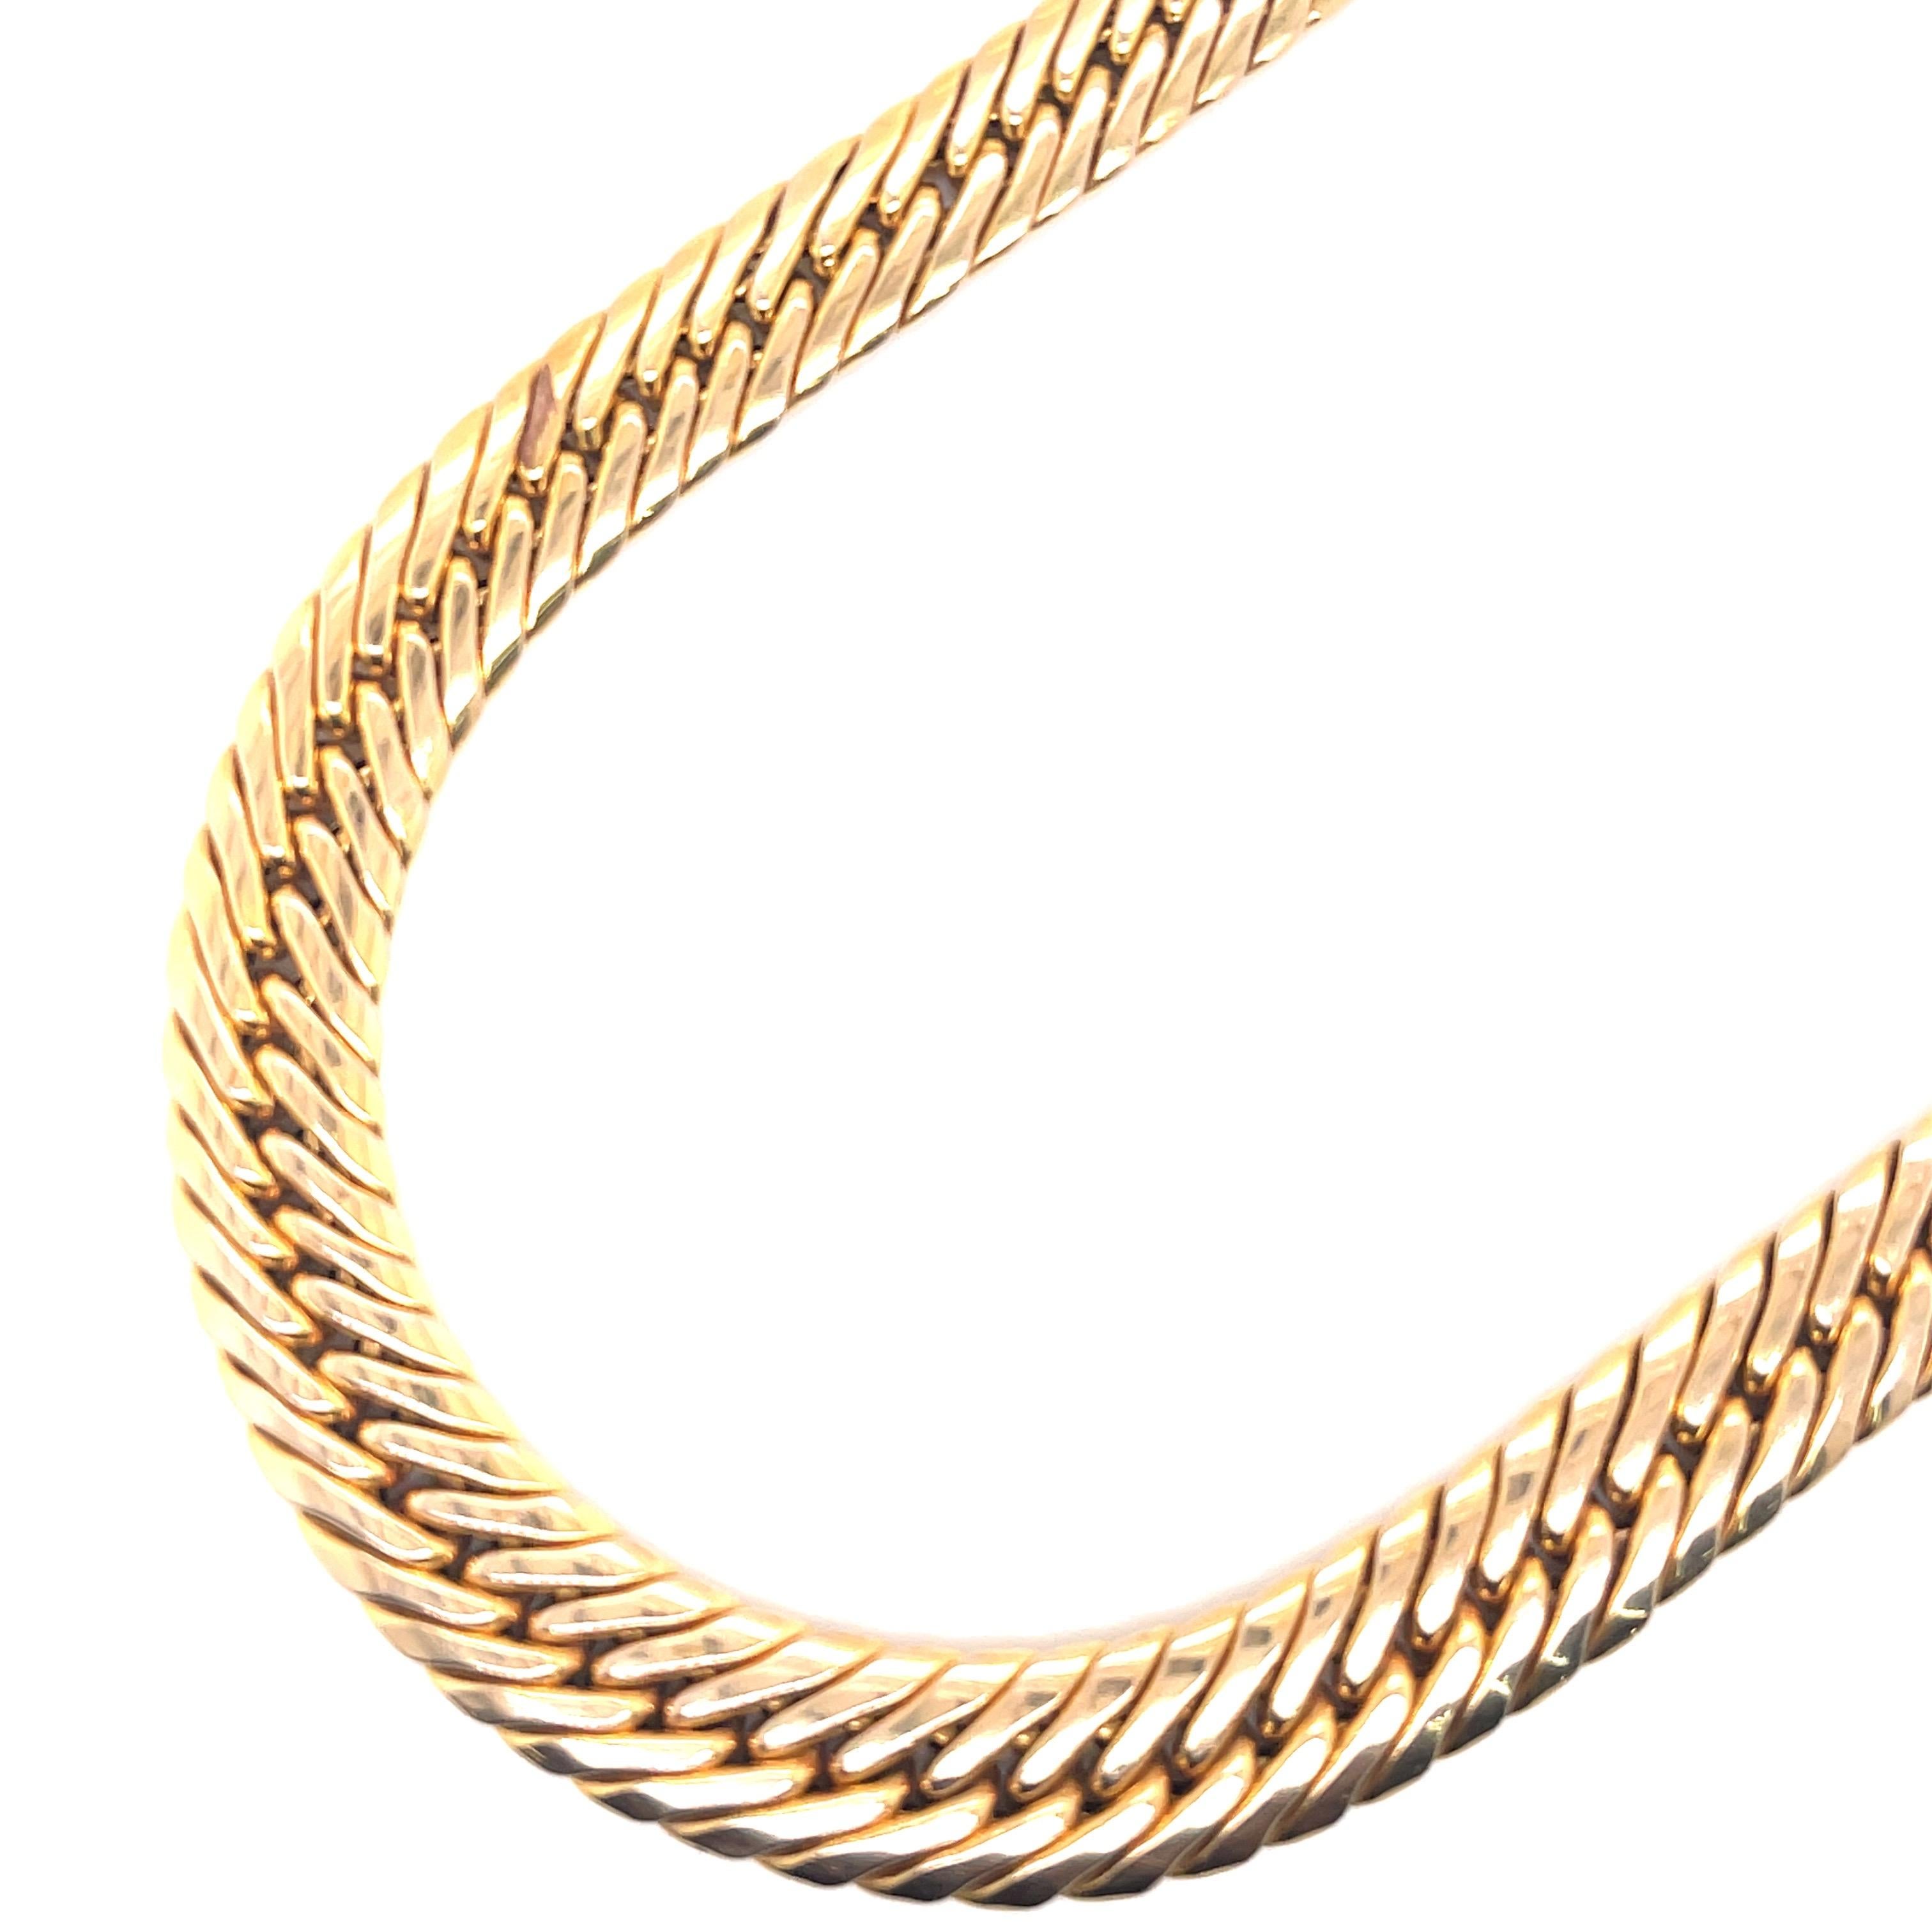 Diese Halskette mit Schlangenmotiv, signiert UnoAErre, ist aus 14 Karat Gelbgold gefertigt und wiegt 36,1 Gramm. 
Hergestellt in Italien